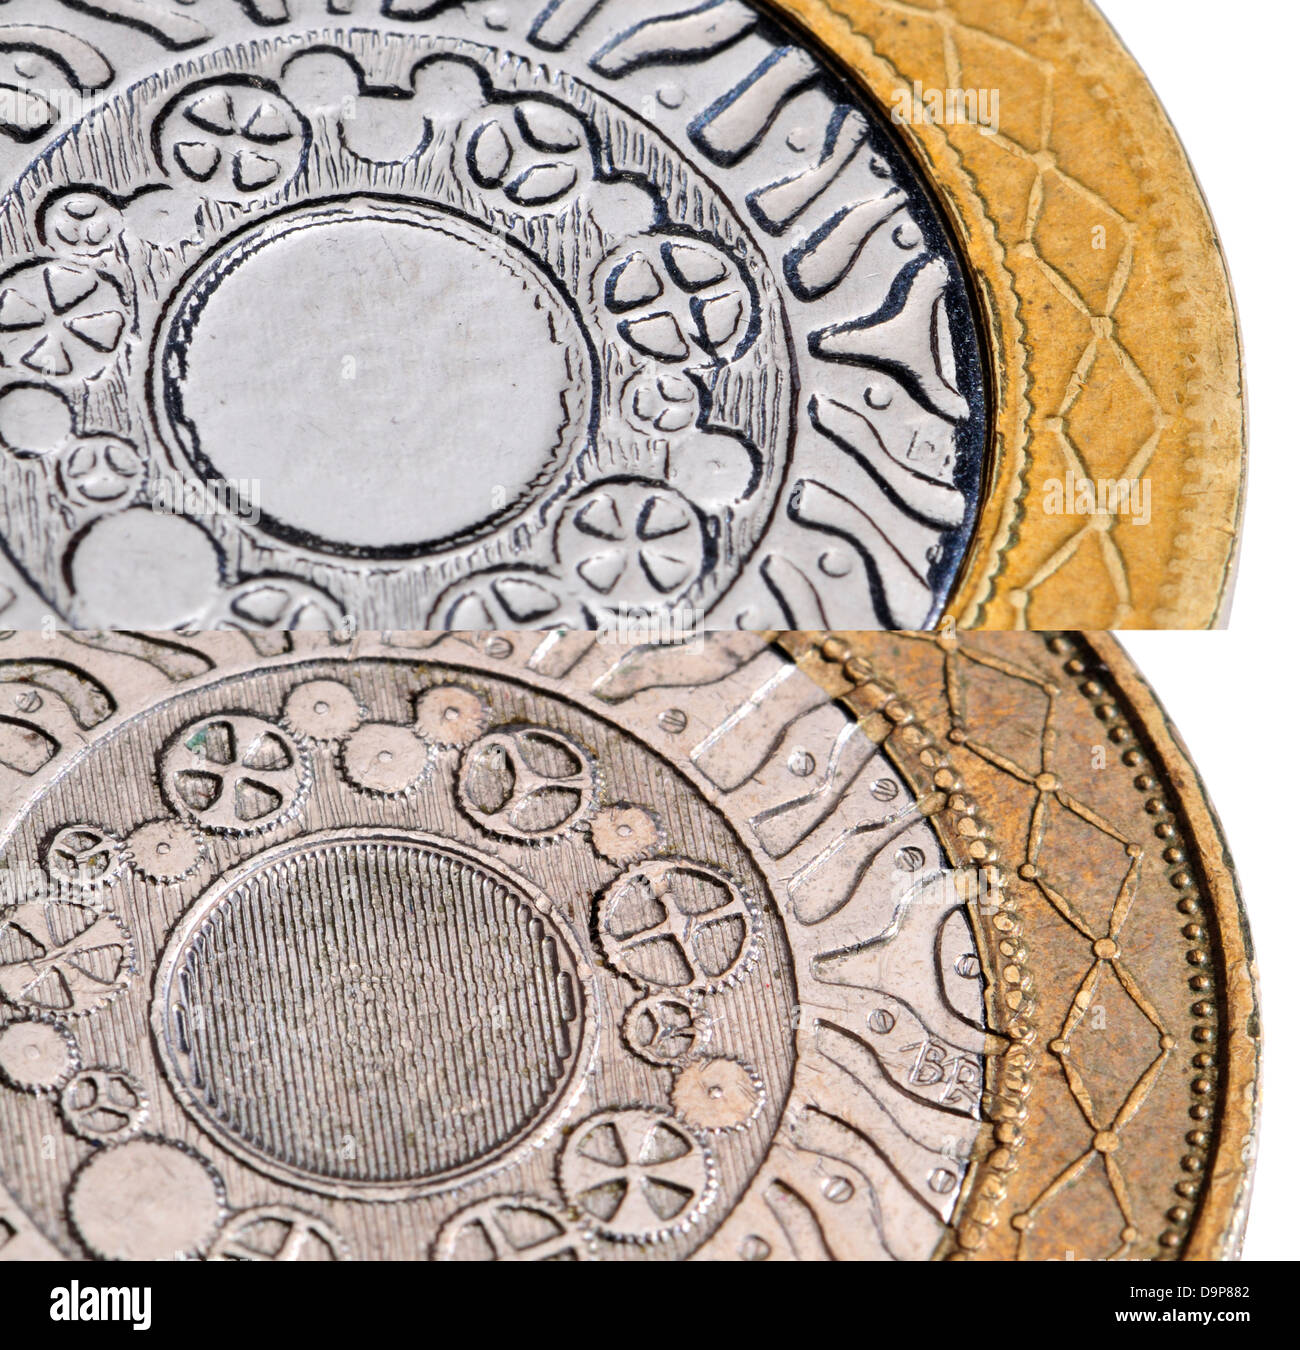 Gefälschte britische £2 Münze (oben) im Vergleich zum Original (unten) zeigt relative Mangel an Details und verschiedenen Farben. Stockfoto